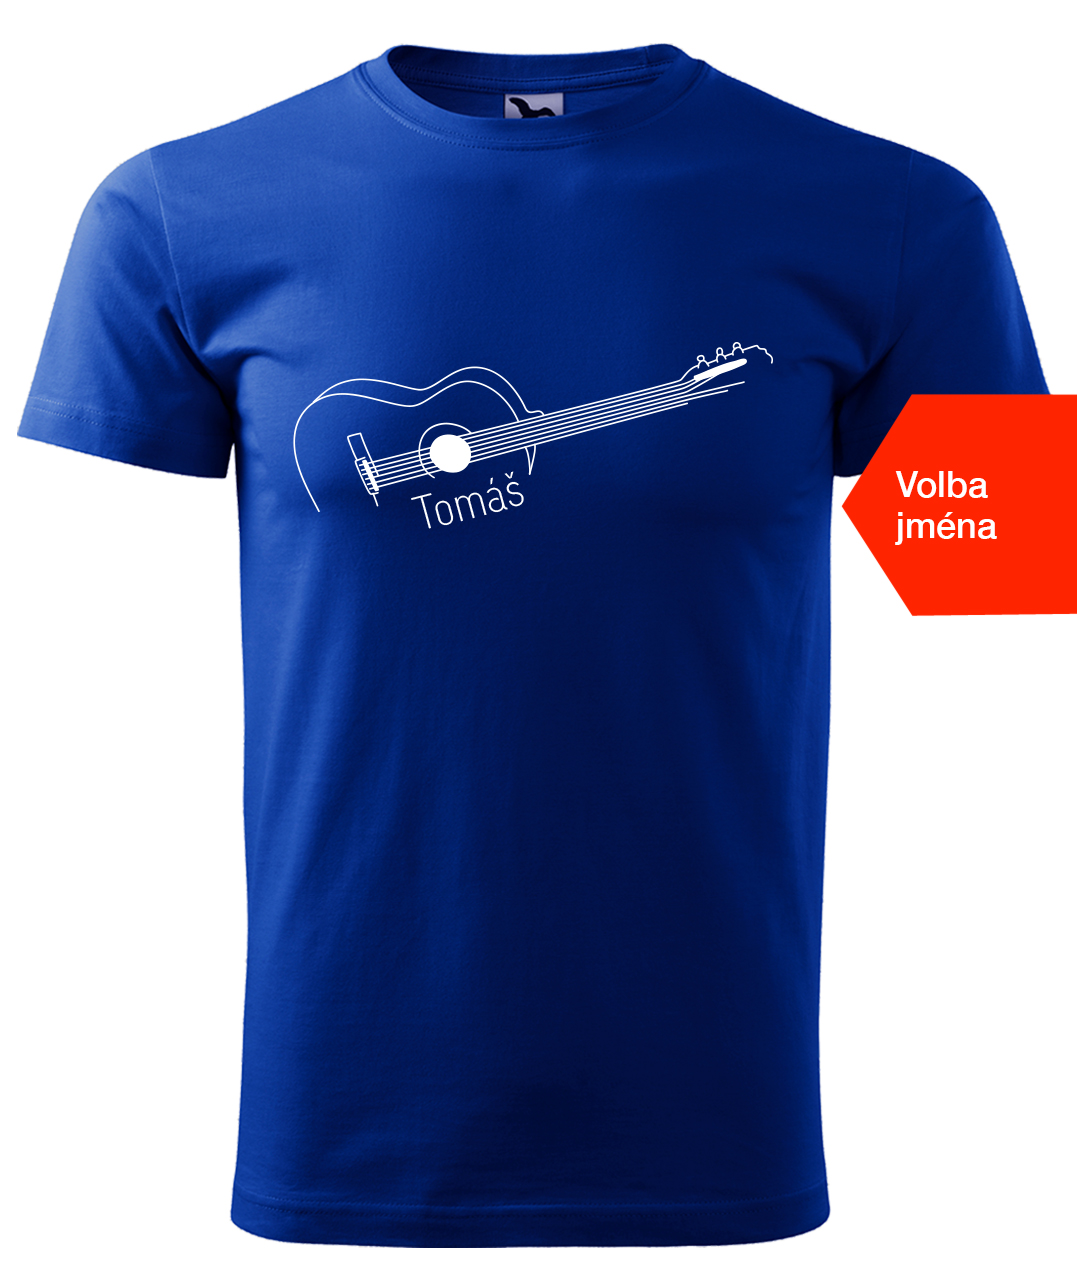 Dětské tričko s kytarou se jménem - Stylizovaná kytara Velikost: 4 roky / 110 cm, Barva: Královská modrá (05), Délka rukávu: Krátký rukáv